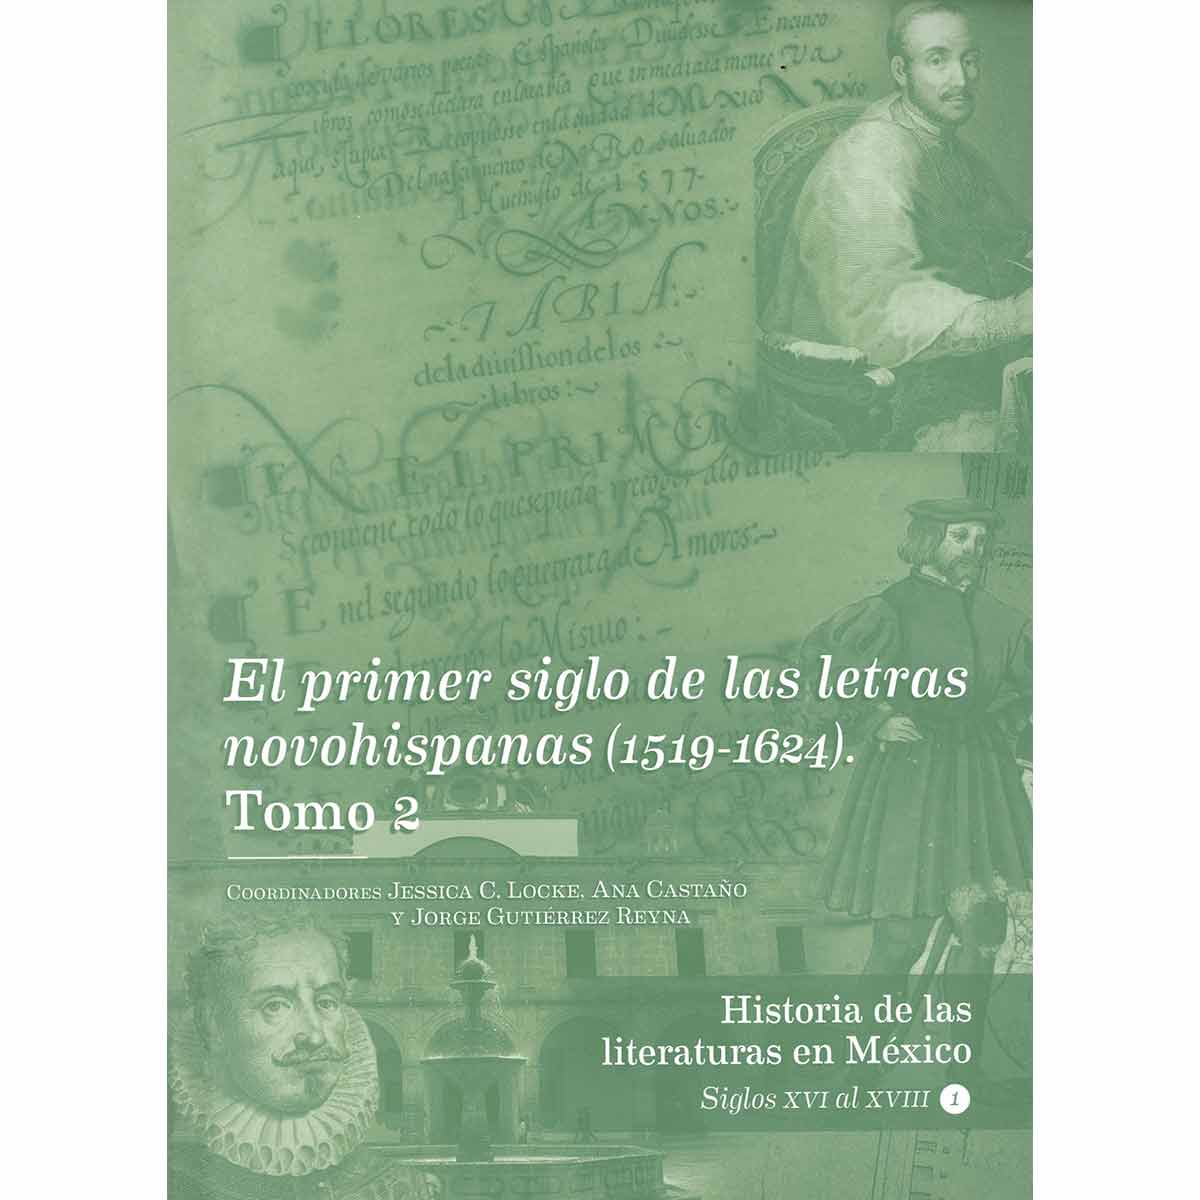 EL PRIMER SIGLO DE LAS LETRAS NOVOHISPANAS (1519-1624) TOMO 2. HISTORIA DE LAS LITERATURAS EN MÉXICO. SIGLOS XVI AL XVIII. VOL. 2